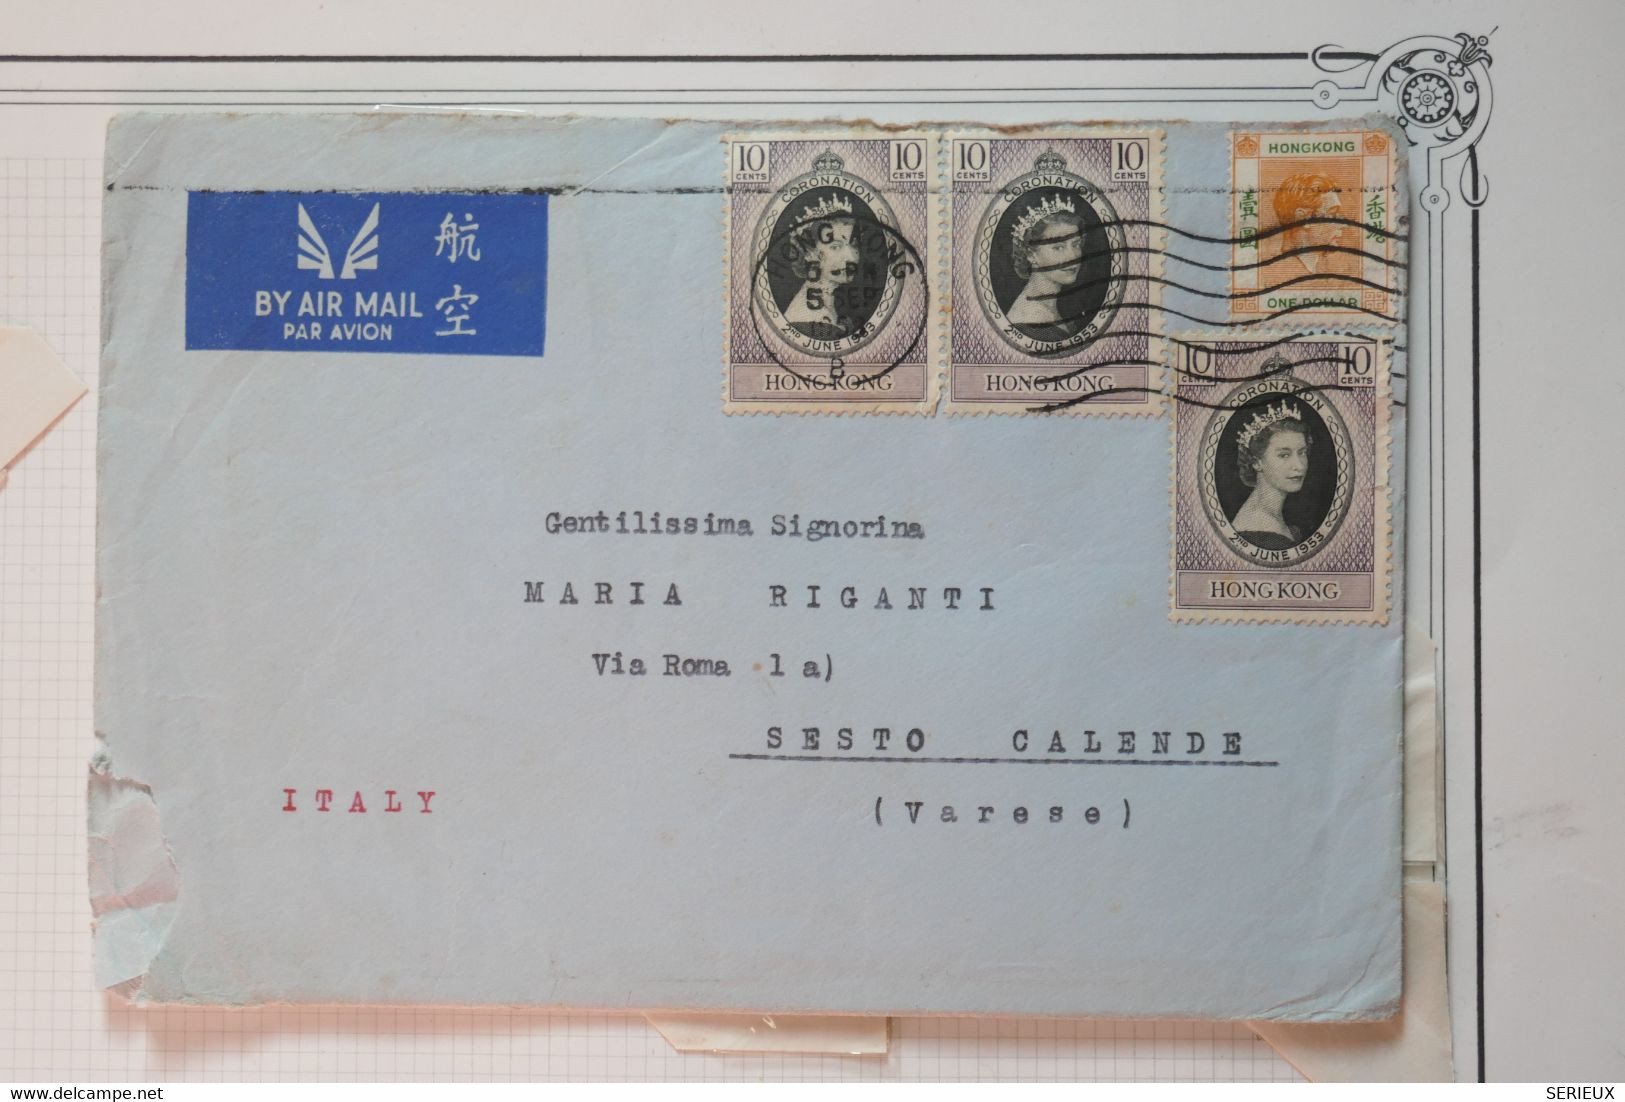 AC 12 CHINA HONG KONG  BELLE LETTRE 1953 PAR AVION  VICTORIA POUR SESTO  ITALIA  +¨TEMOIGNAGE+1 $+ AFFRANCH. PLAISANT - Covers & Documents